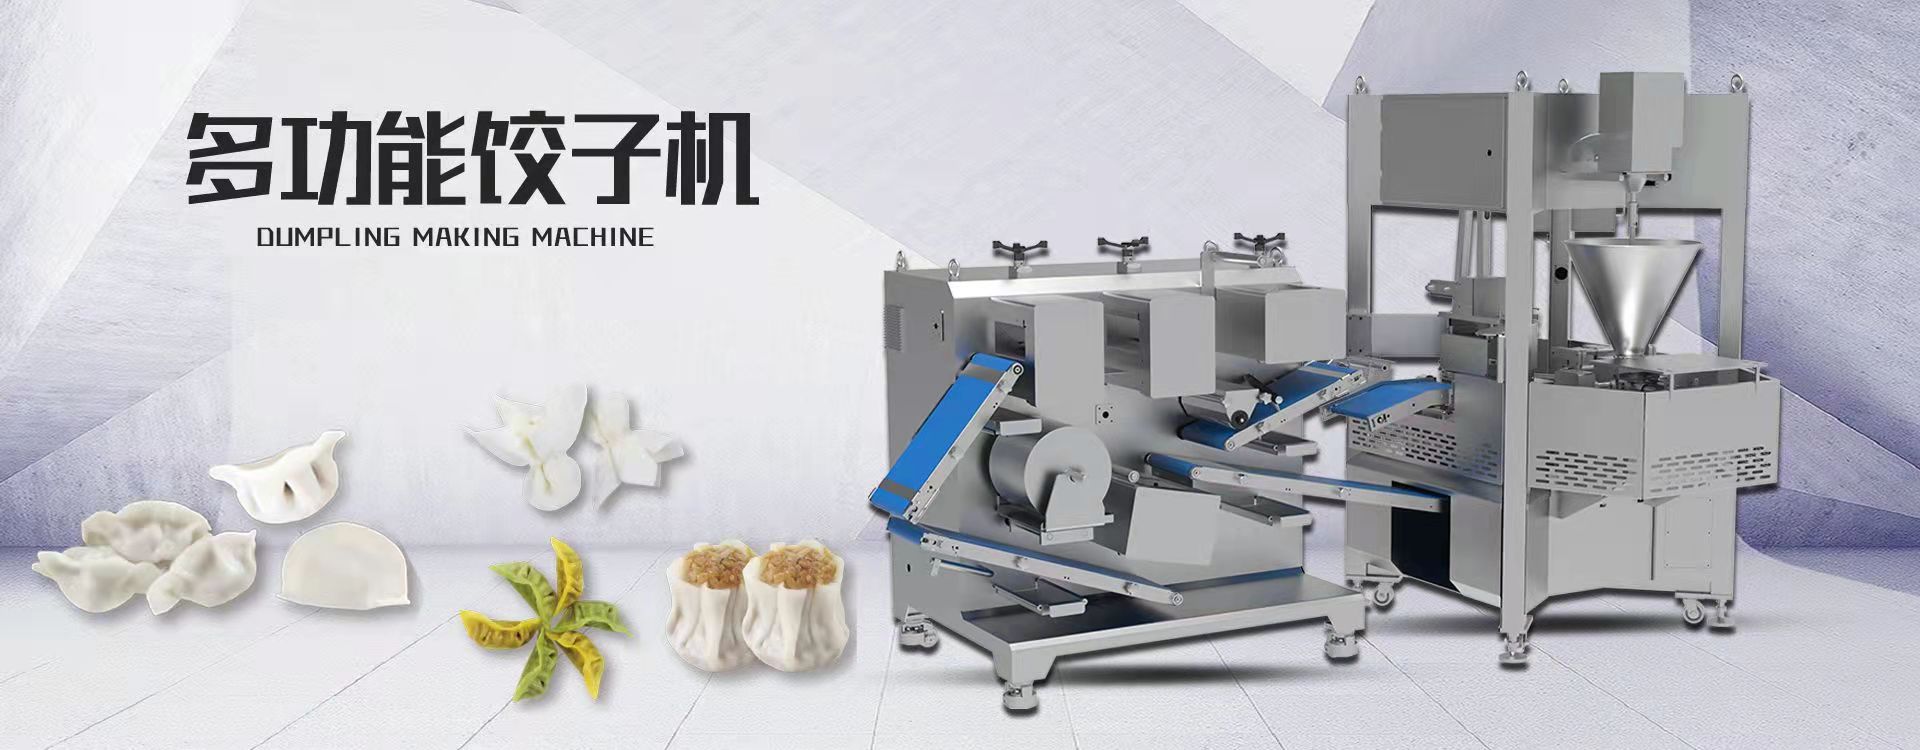 Dumpling Folding Machine